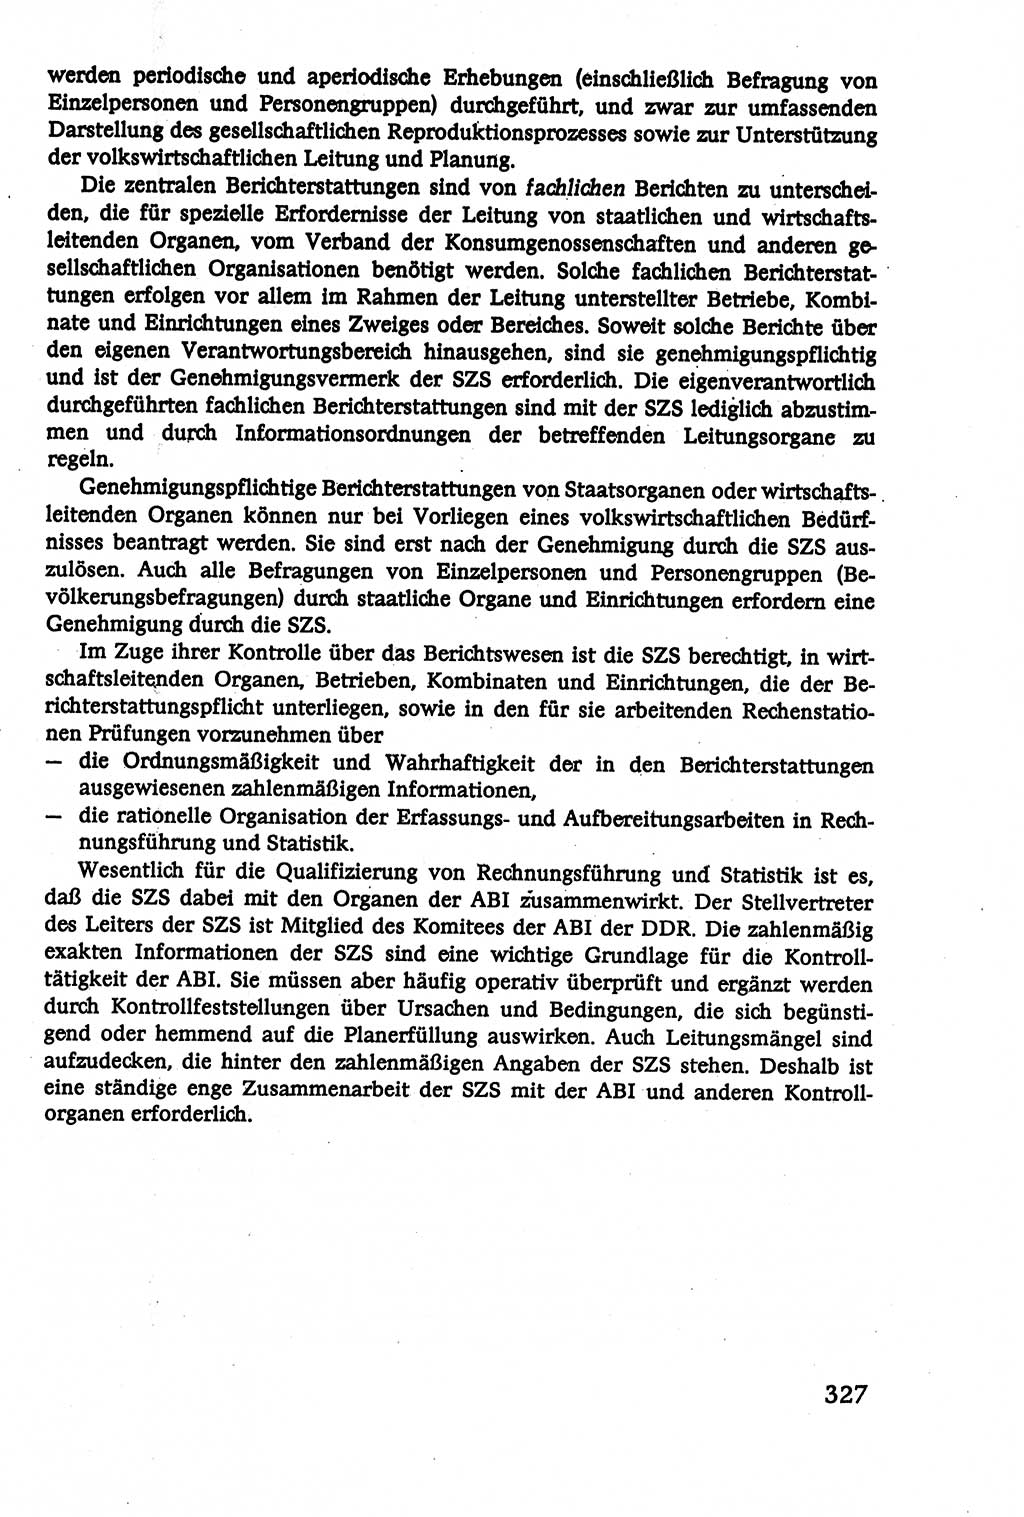 Verwaltungsrecht [Deutsche Demokratische Republik (DDR)], Lehrbuch 1979, Seite 327 (Verw.-R. DDR Lb. 1979, S. 327)